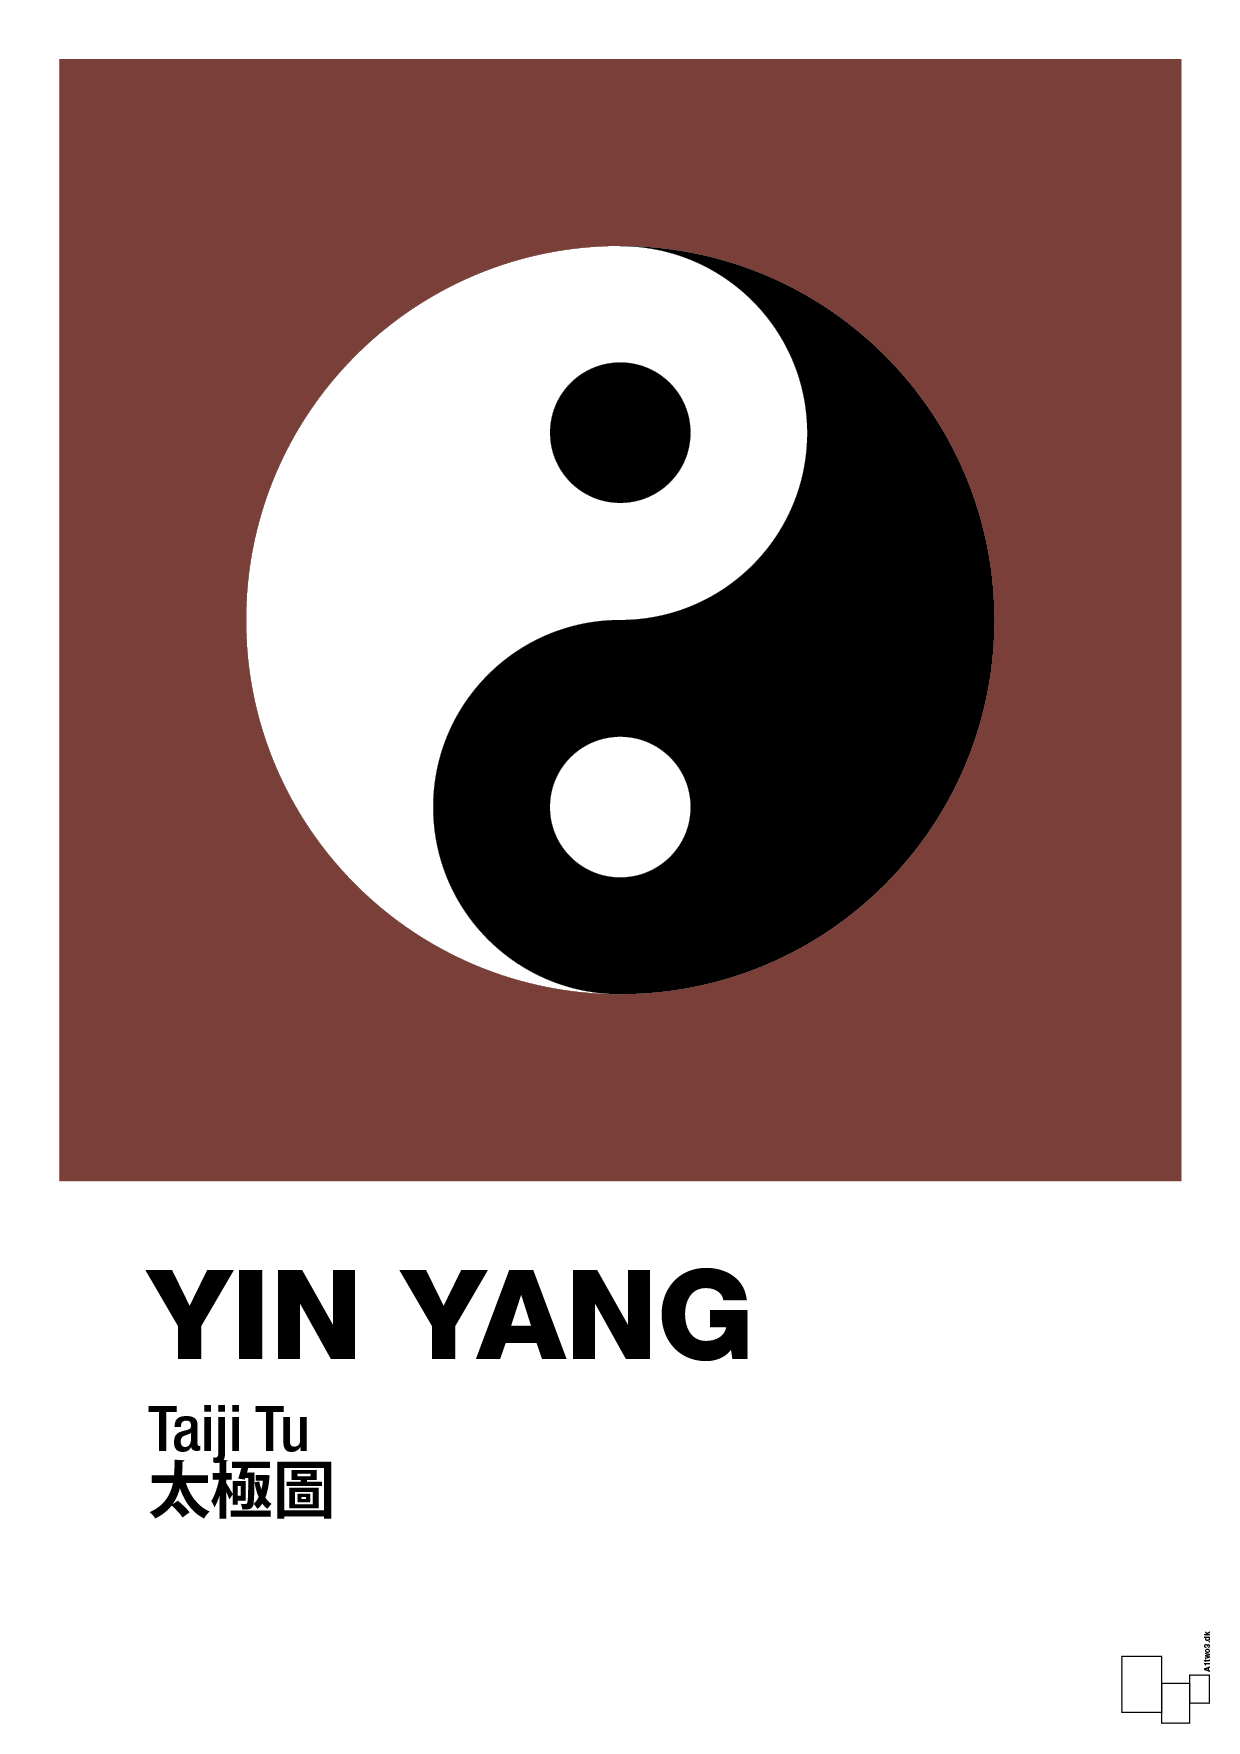 yin yang - Plakat med Videnskab i Red Pepper